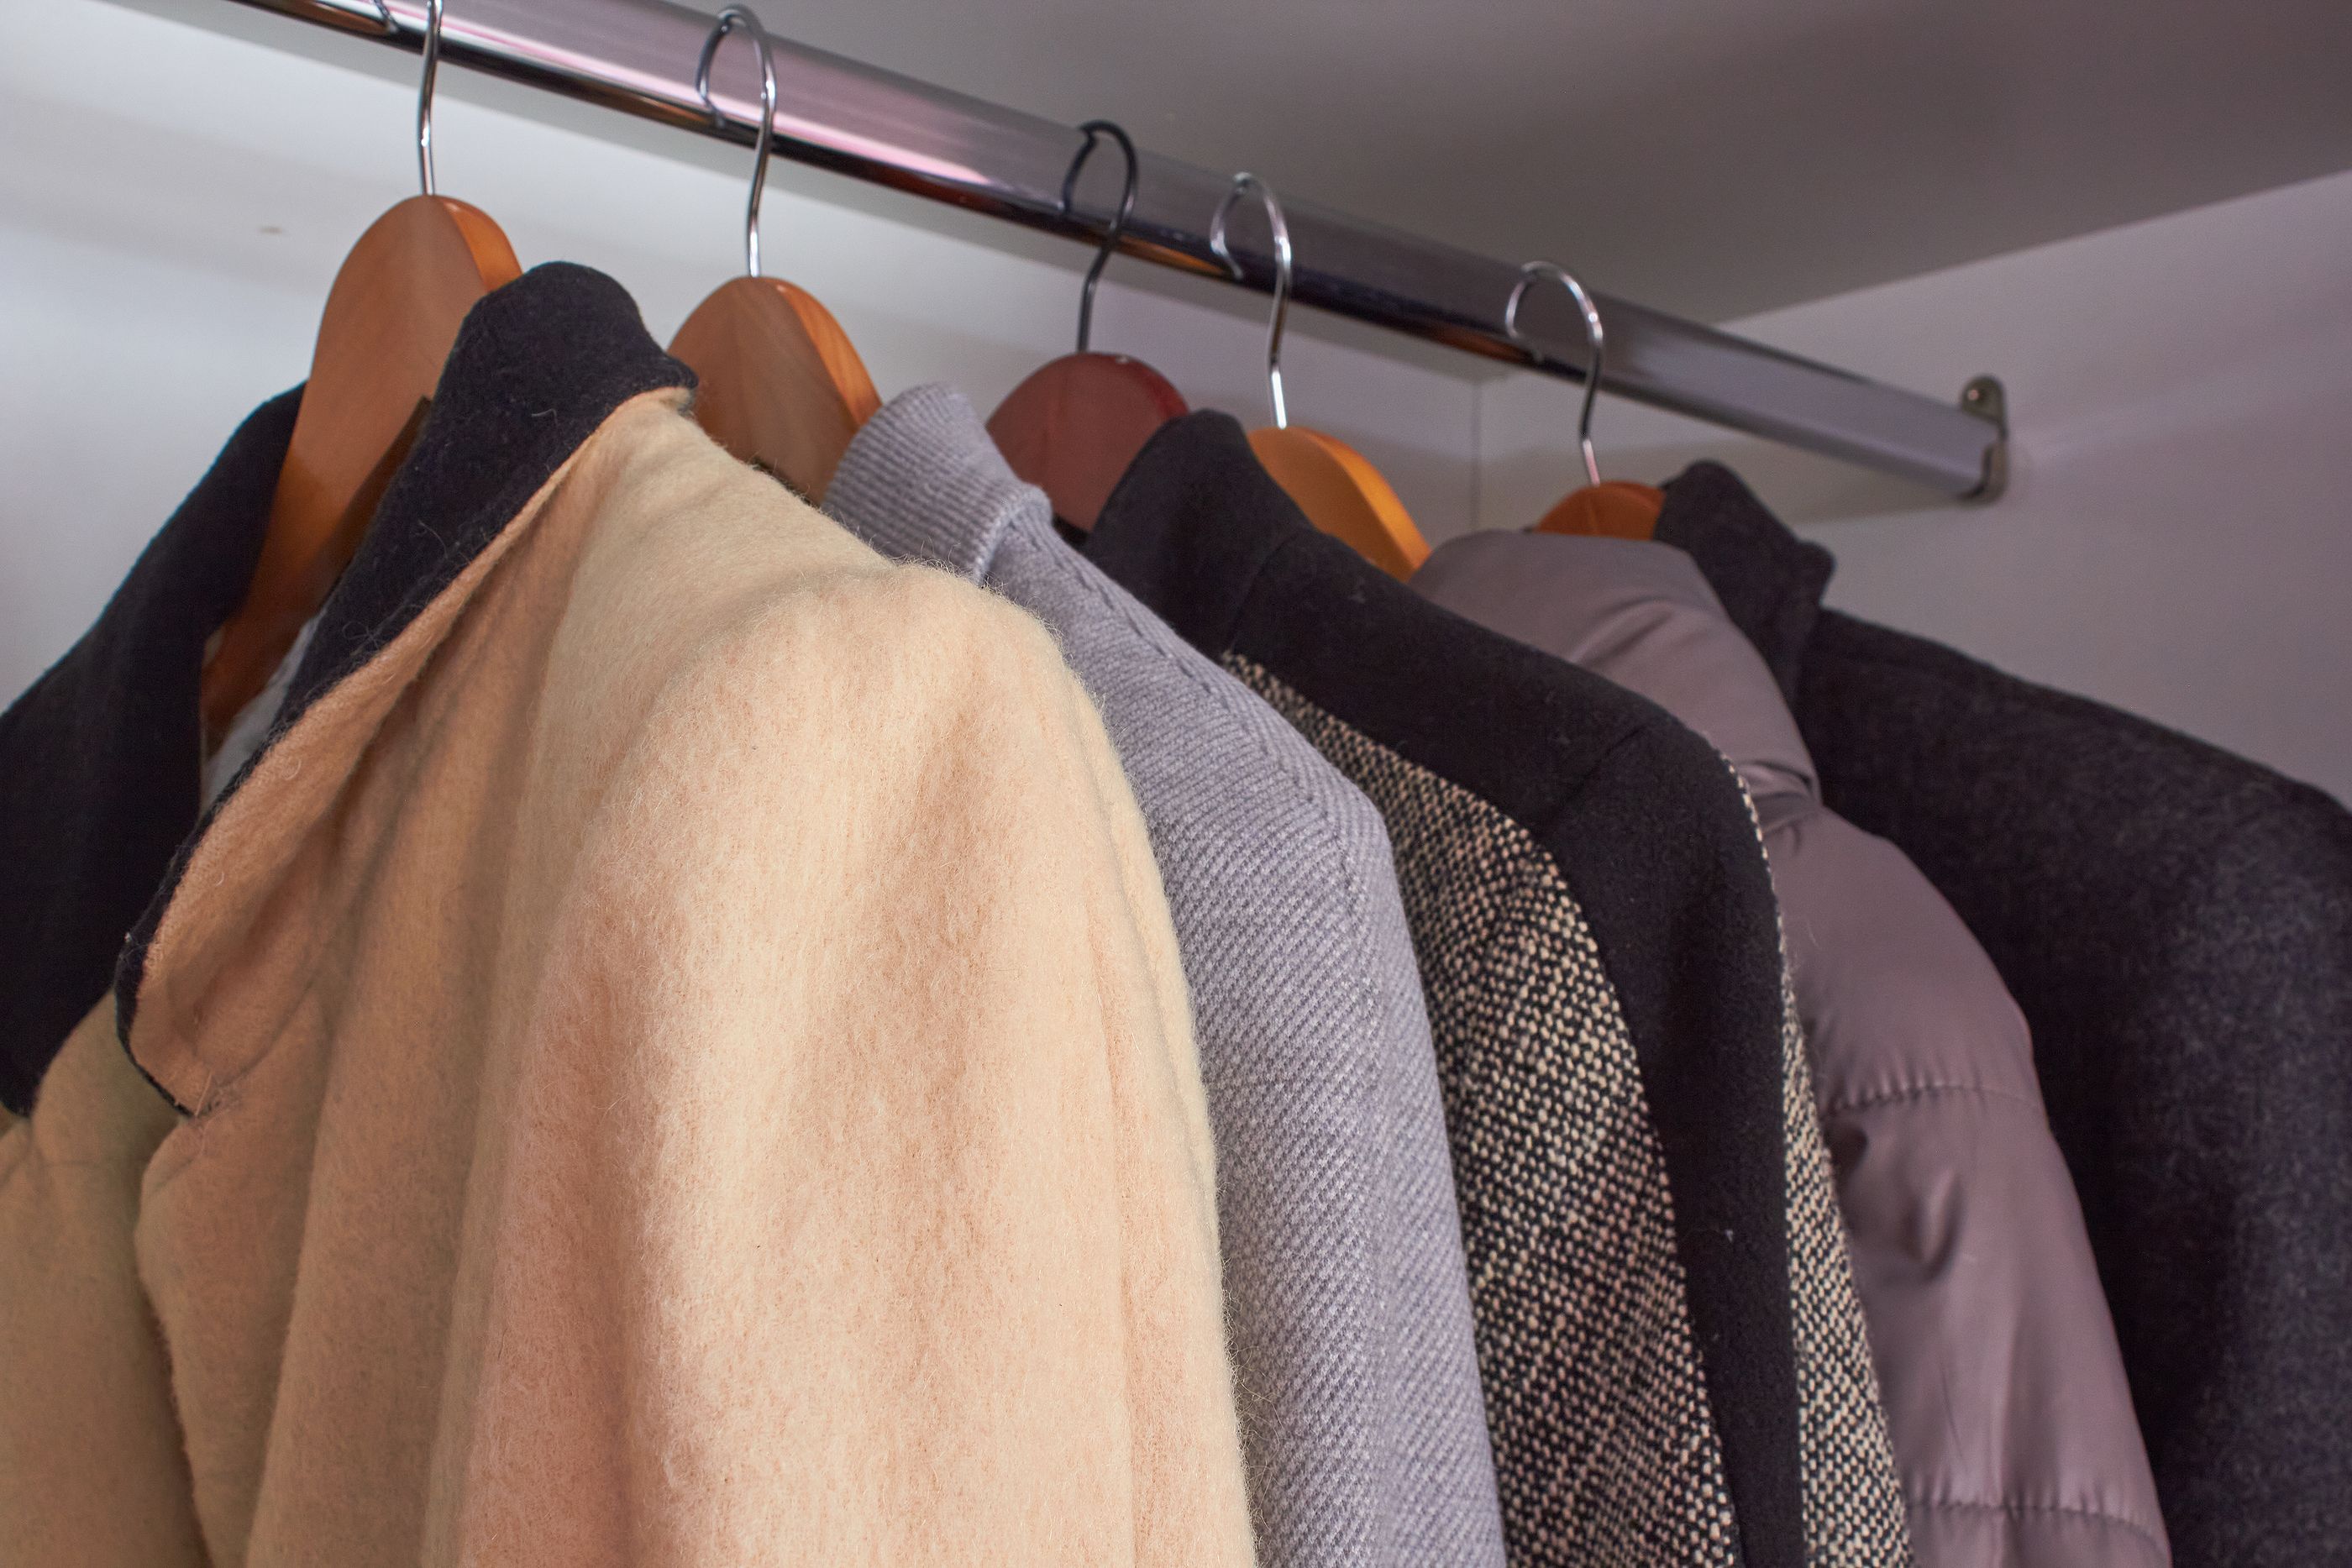 Cambio de armario: el truco para guardar los abrigos y que ocupen menos espacio. Foto: Bigstock